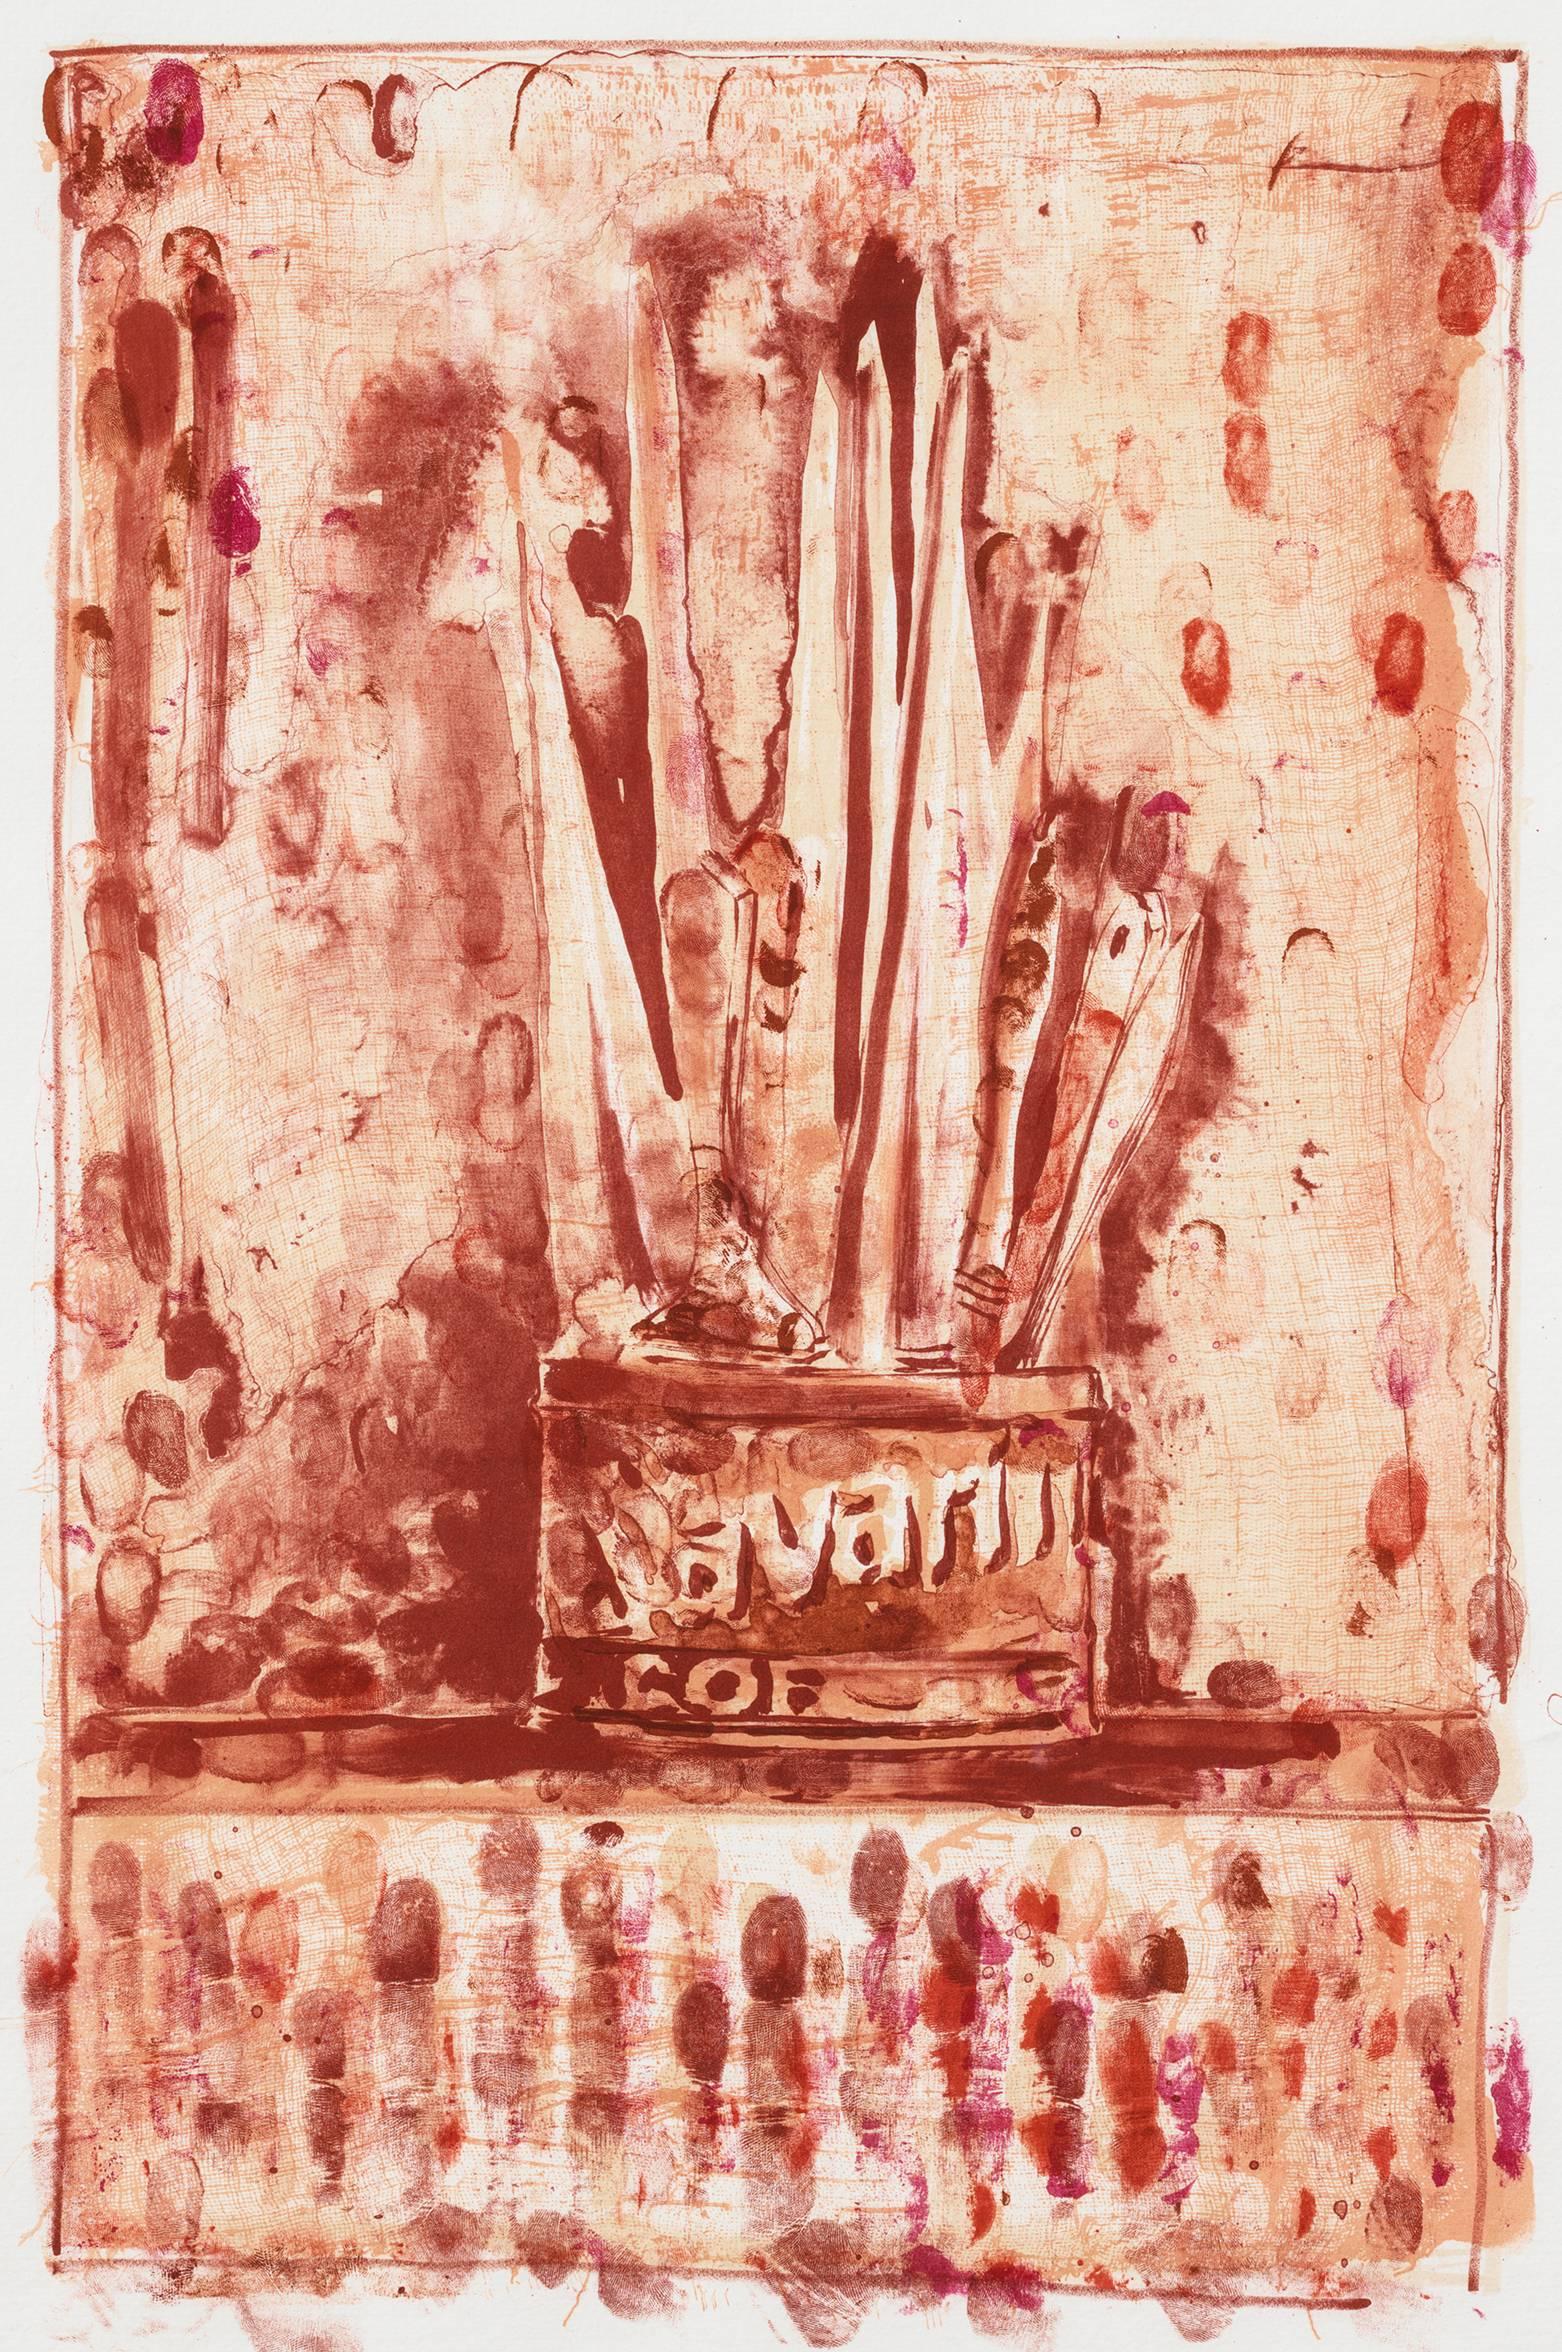 Savarin 3 - Print by Jasper Johns